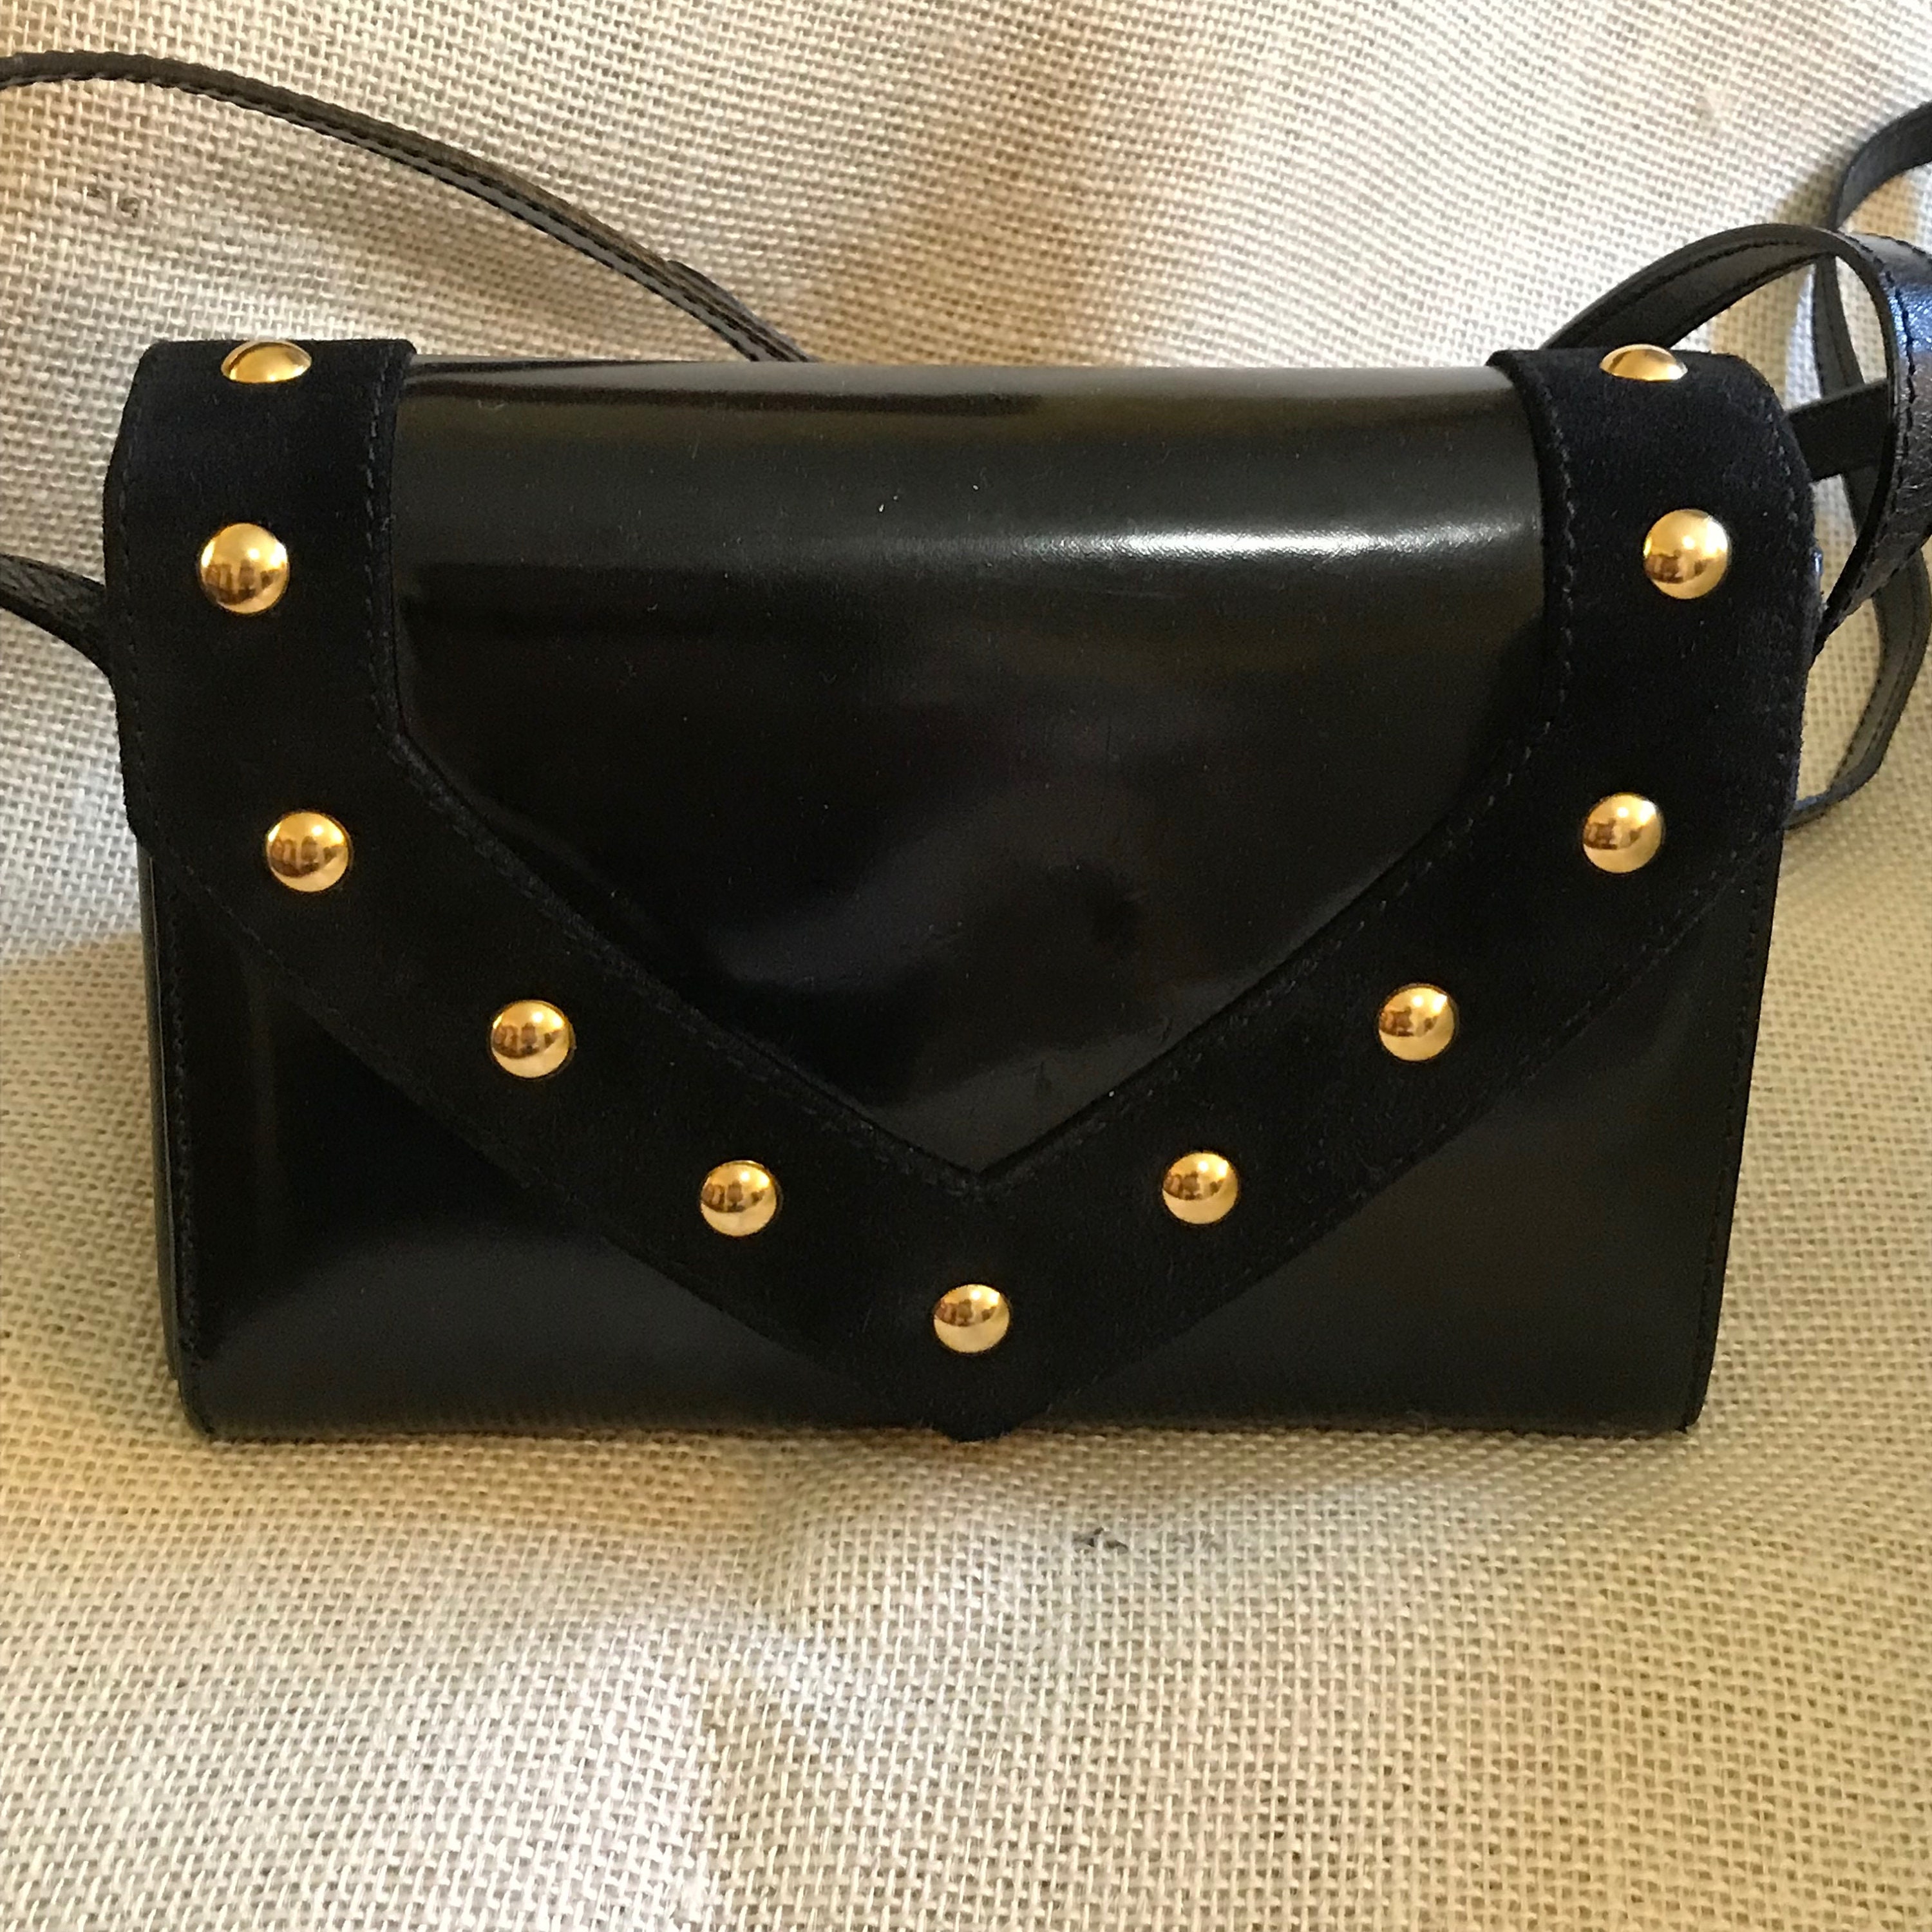 Tassen & portemonnees Handtassen Crossbodytassen Vintage zwarte lakleren tas met gouden accenten 